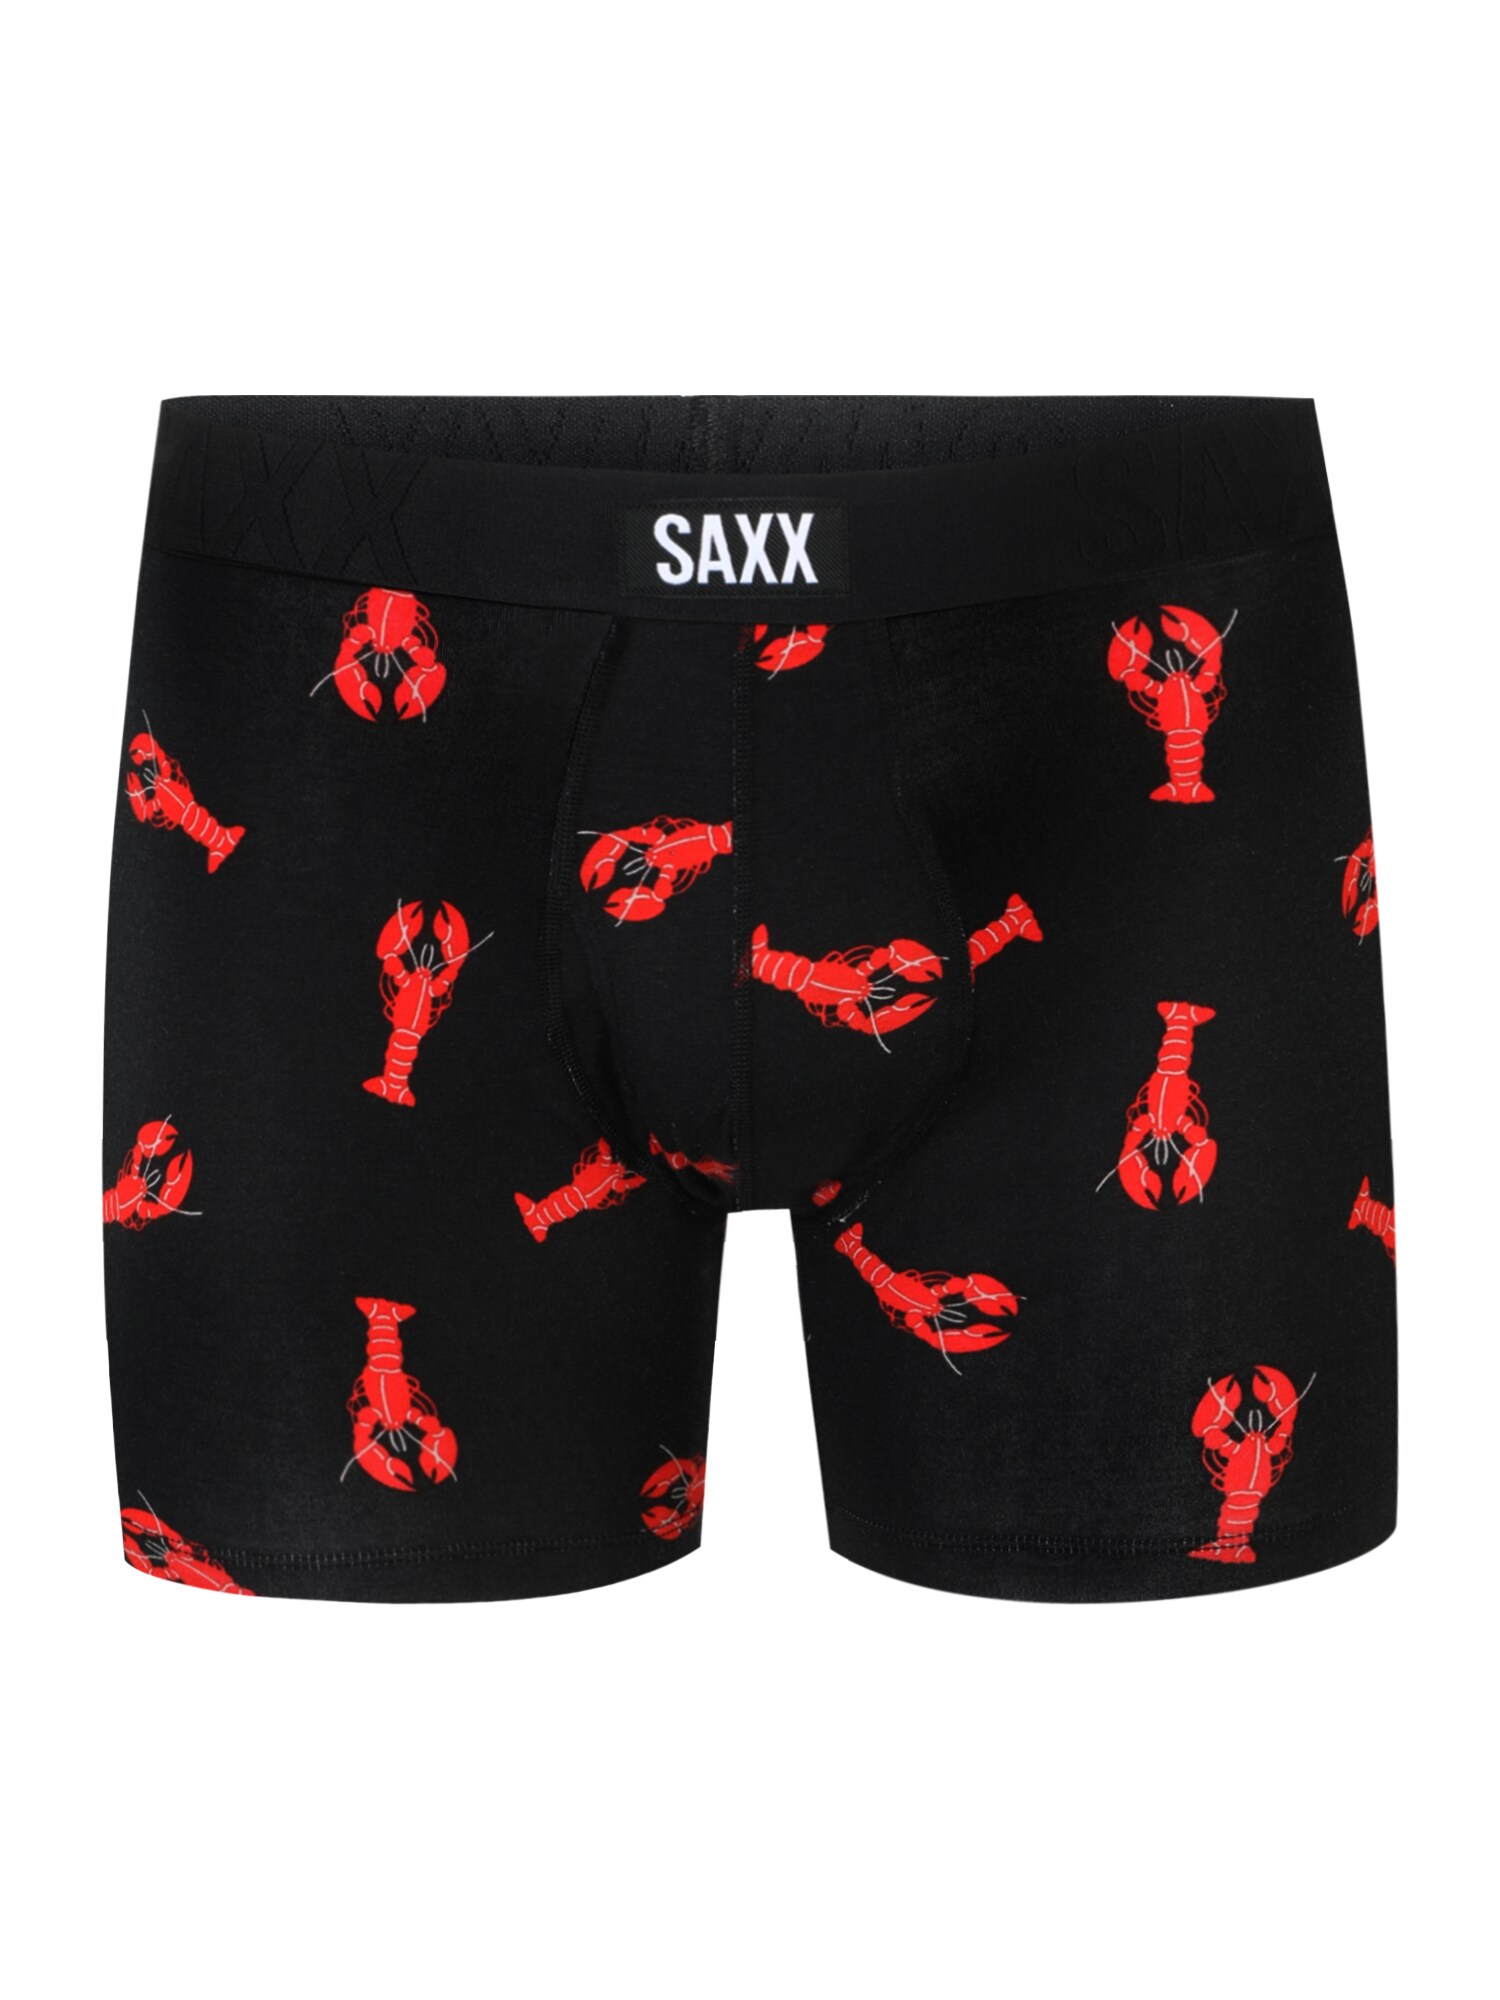 SAXX Sportinės trumpikės 'UNDERCOVER' juoda / raudona / balta